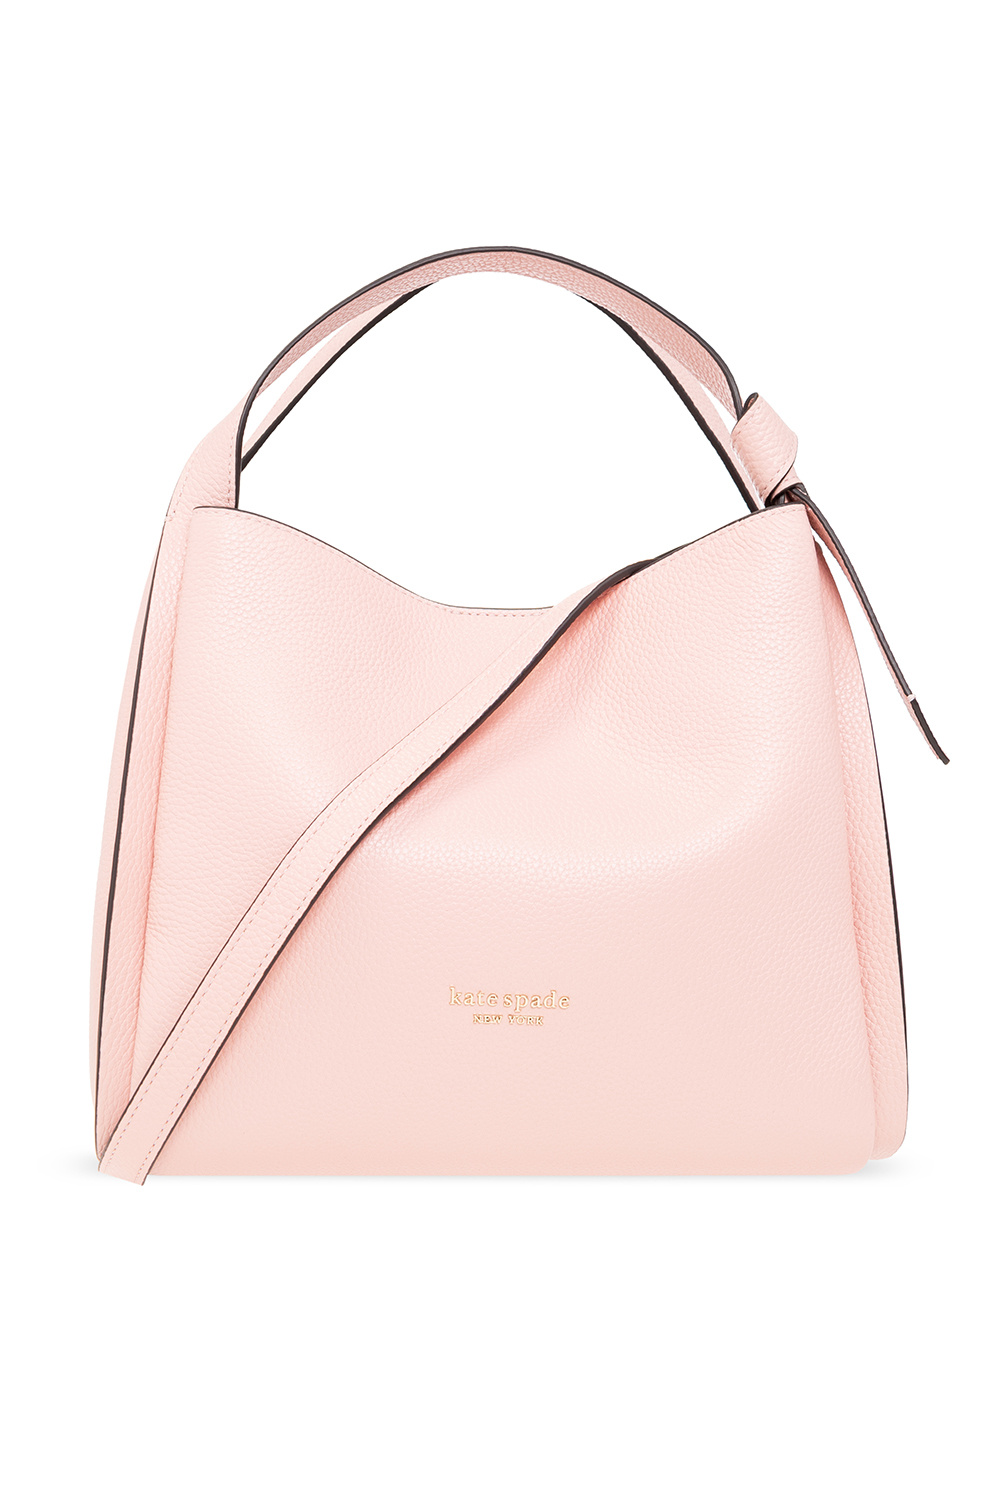 Kate Spade Hot Pink/Coral Handbag EUC